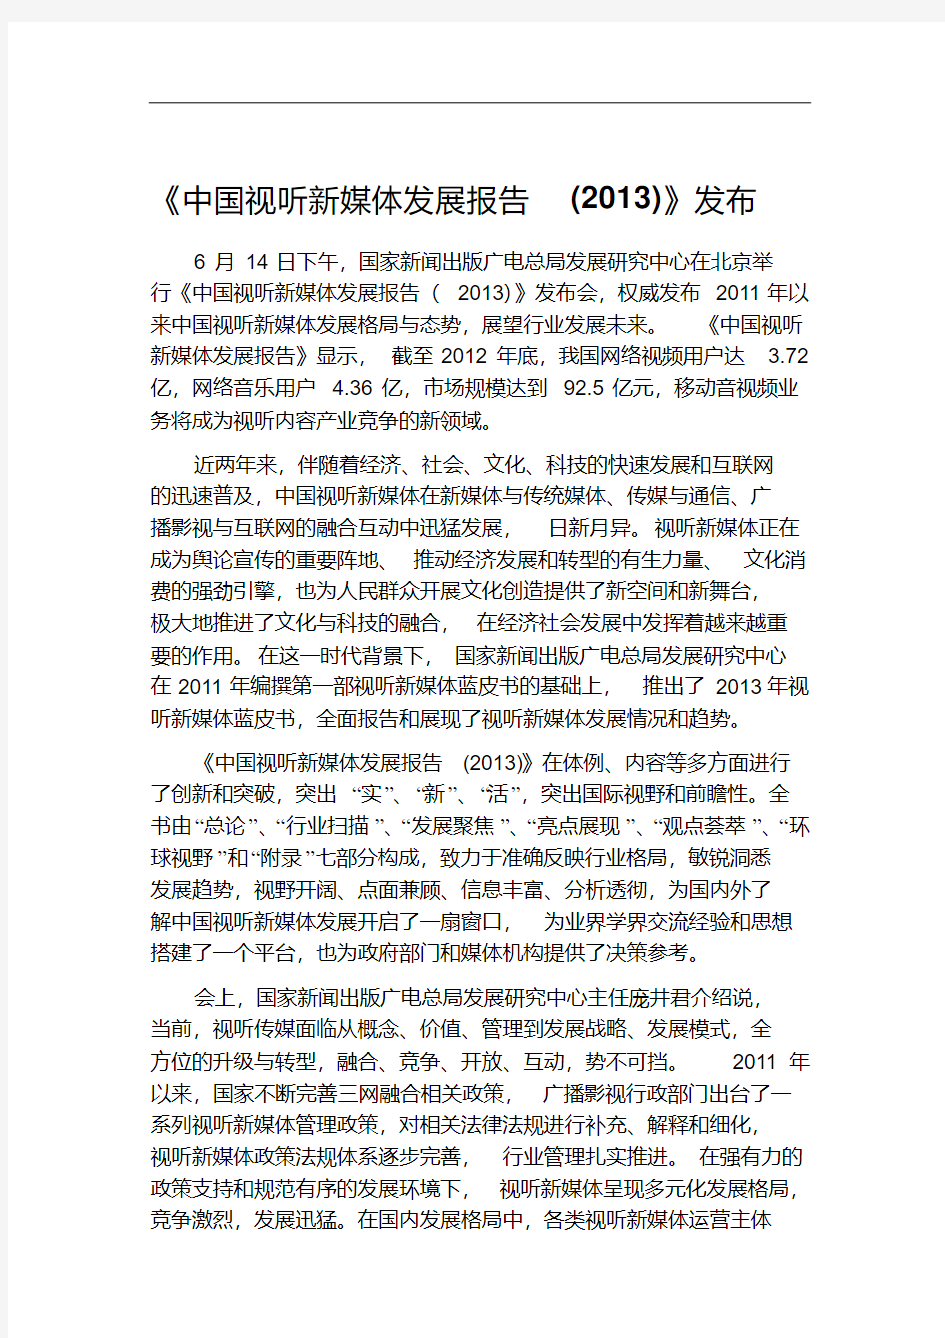 《中国视听新媒体发展报告(2013)》发布